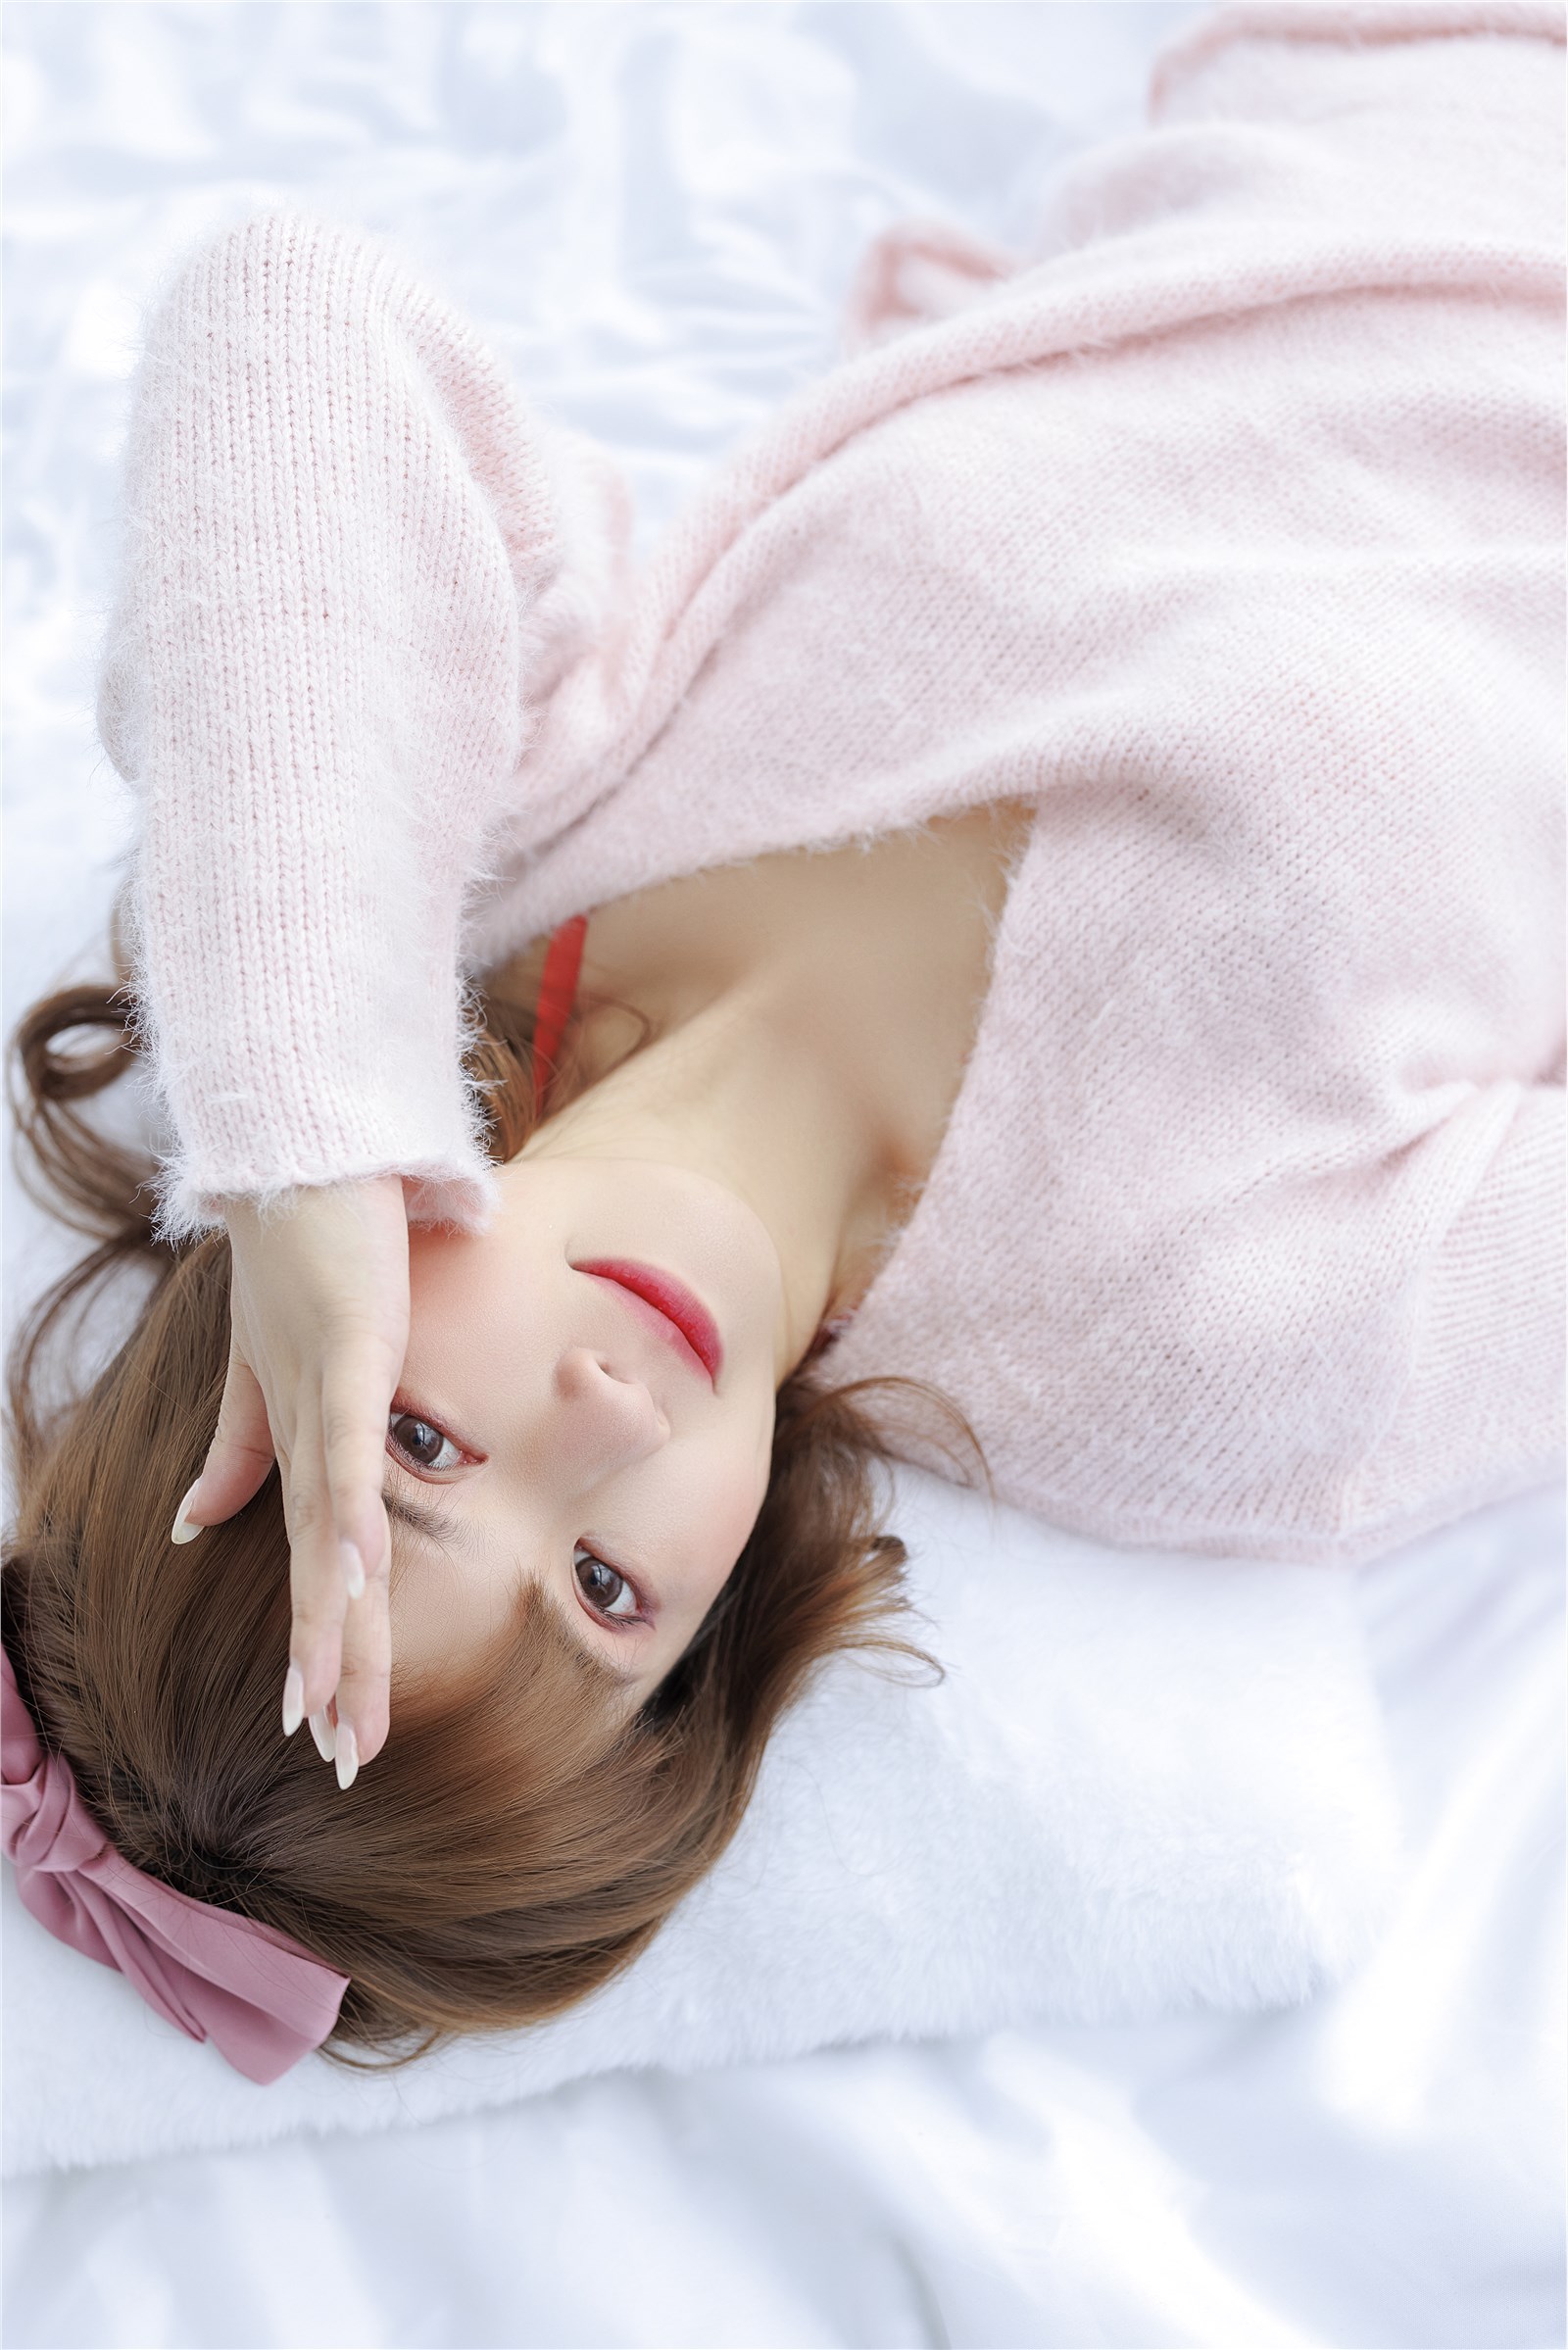 002. Zhang Siyun Nice - Internal purchase of watermark free pink sweater(49)